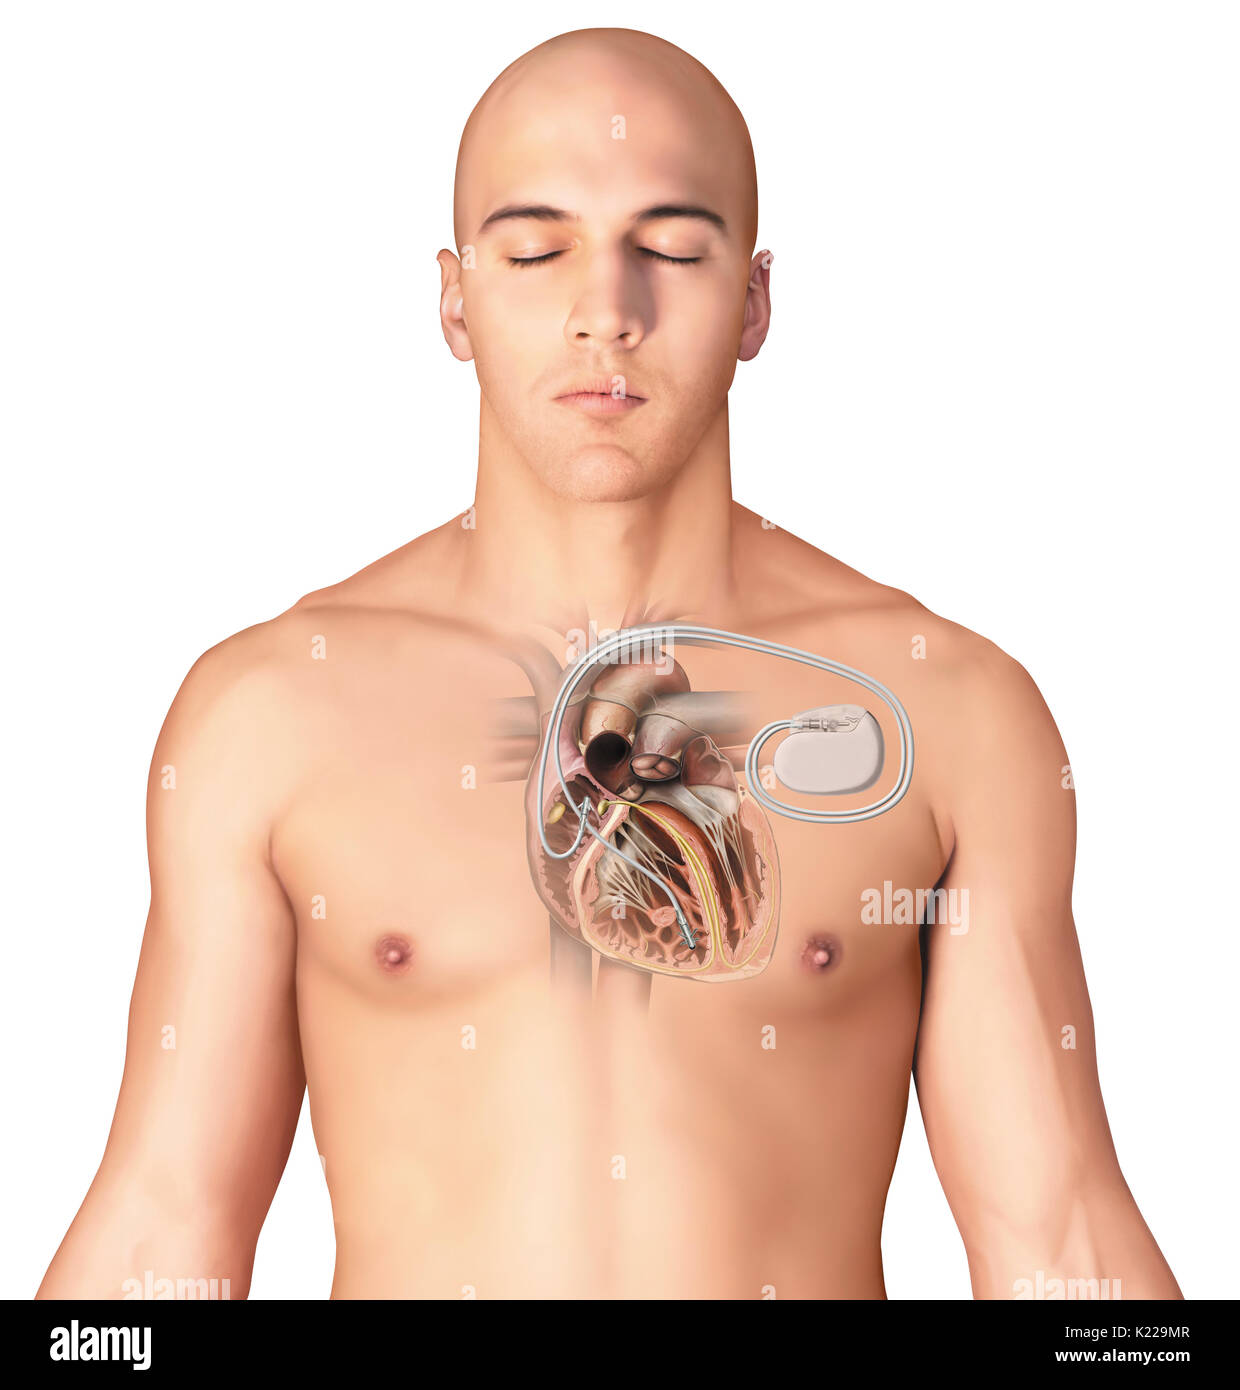 Elektronisches Implantat strahlt, dass ein elektrischer Impuls um einen regelmäßigen Herzrhythmus bei Patienten mit Herz Schaden zu bewahren. Stockfoto